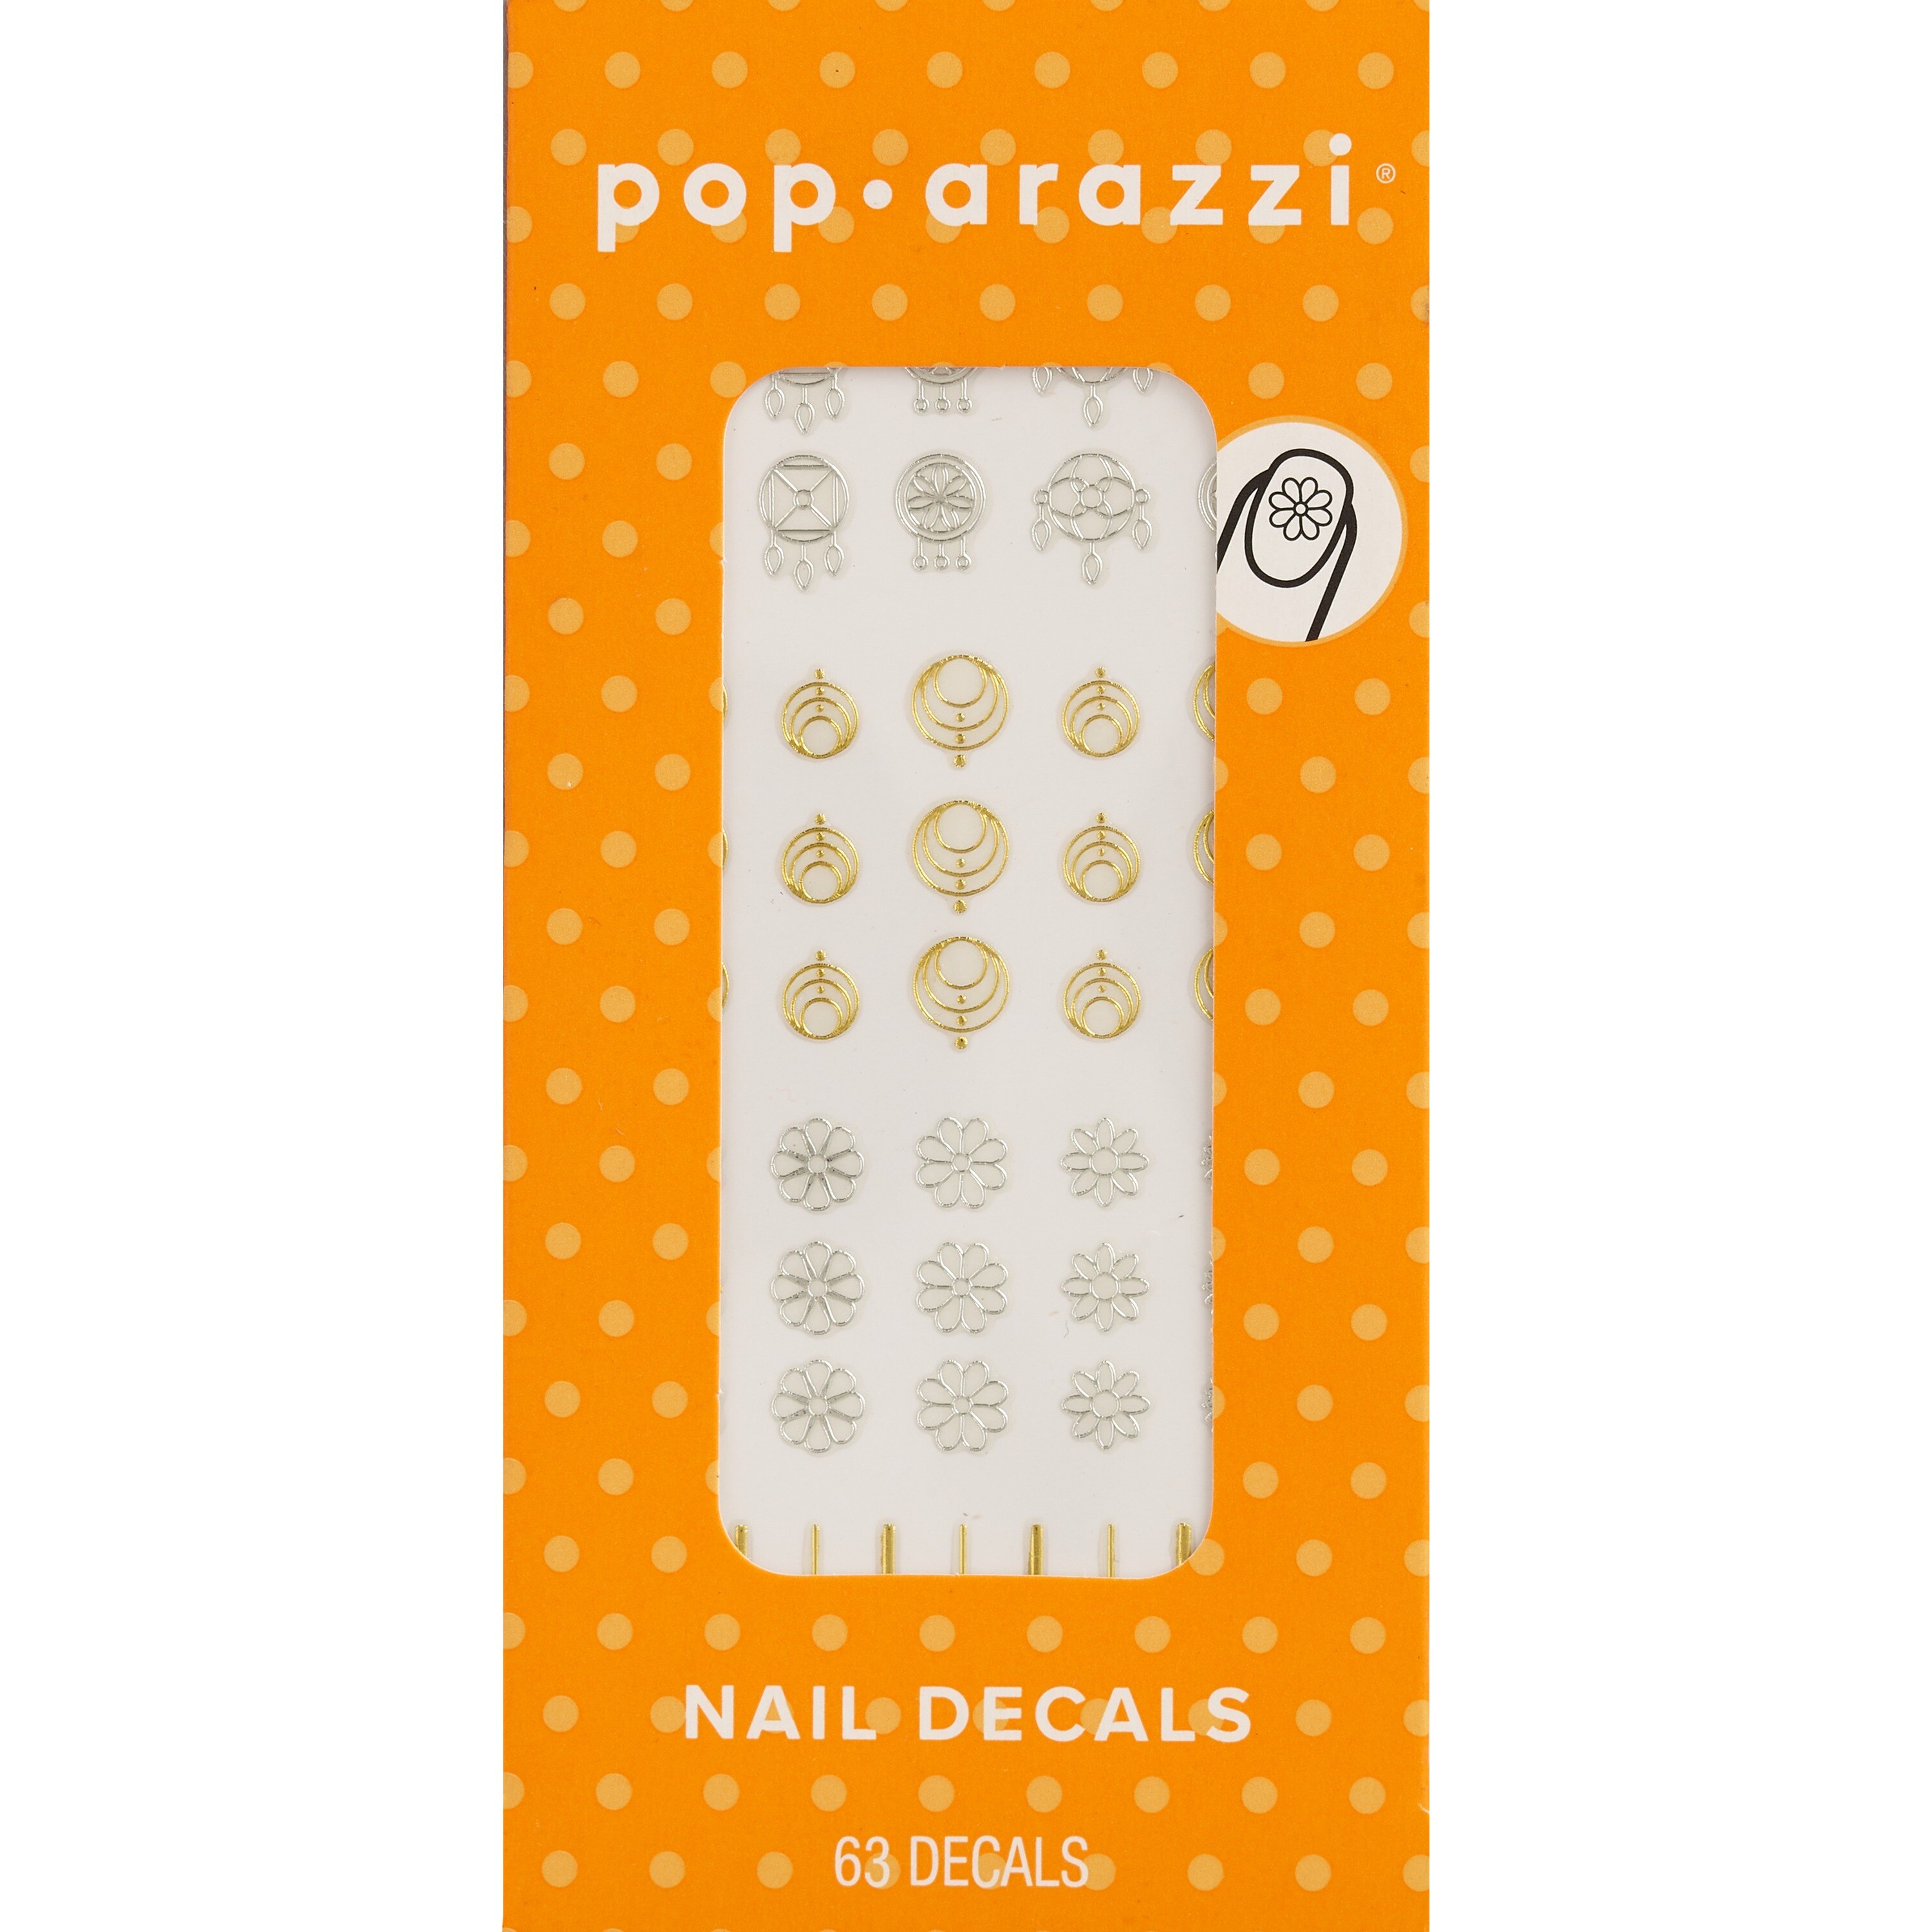 Pop-arazzi Nail Decals